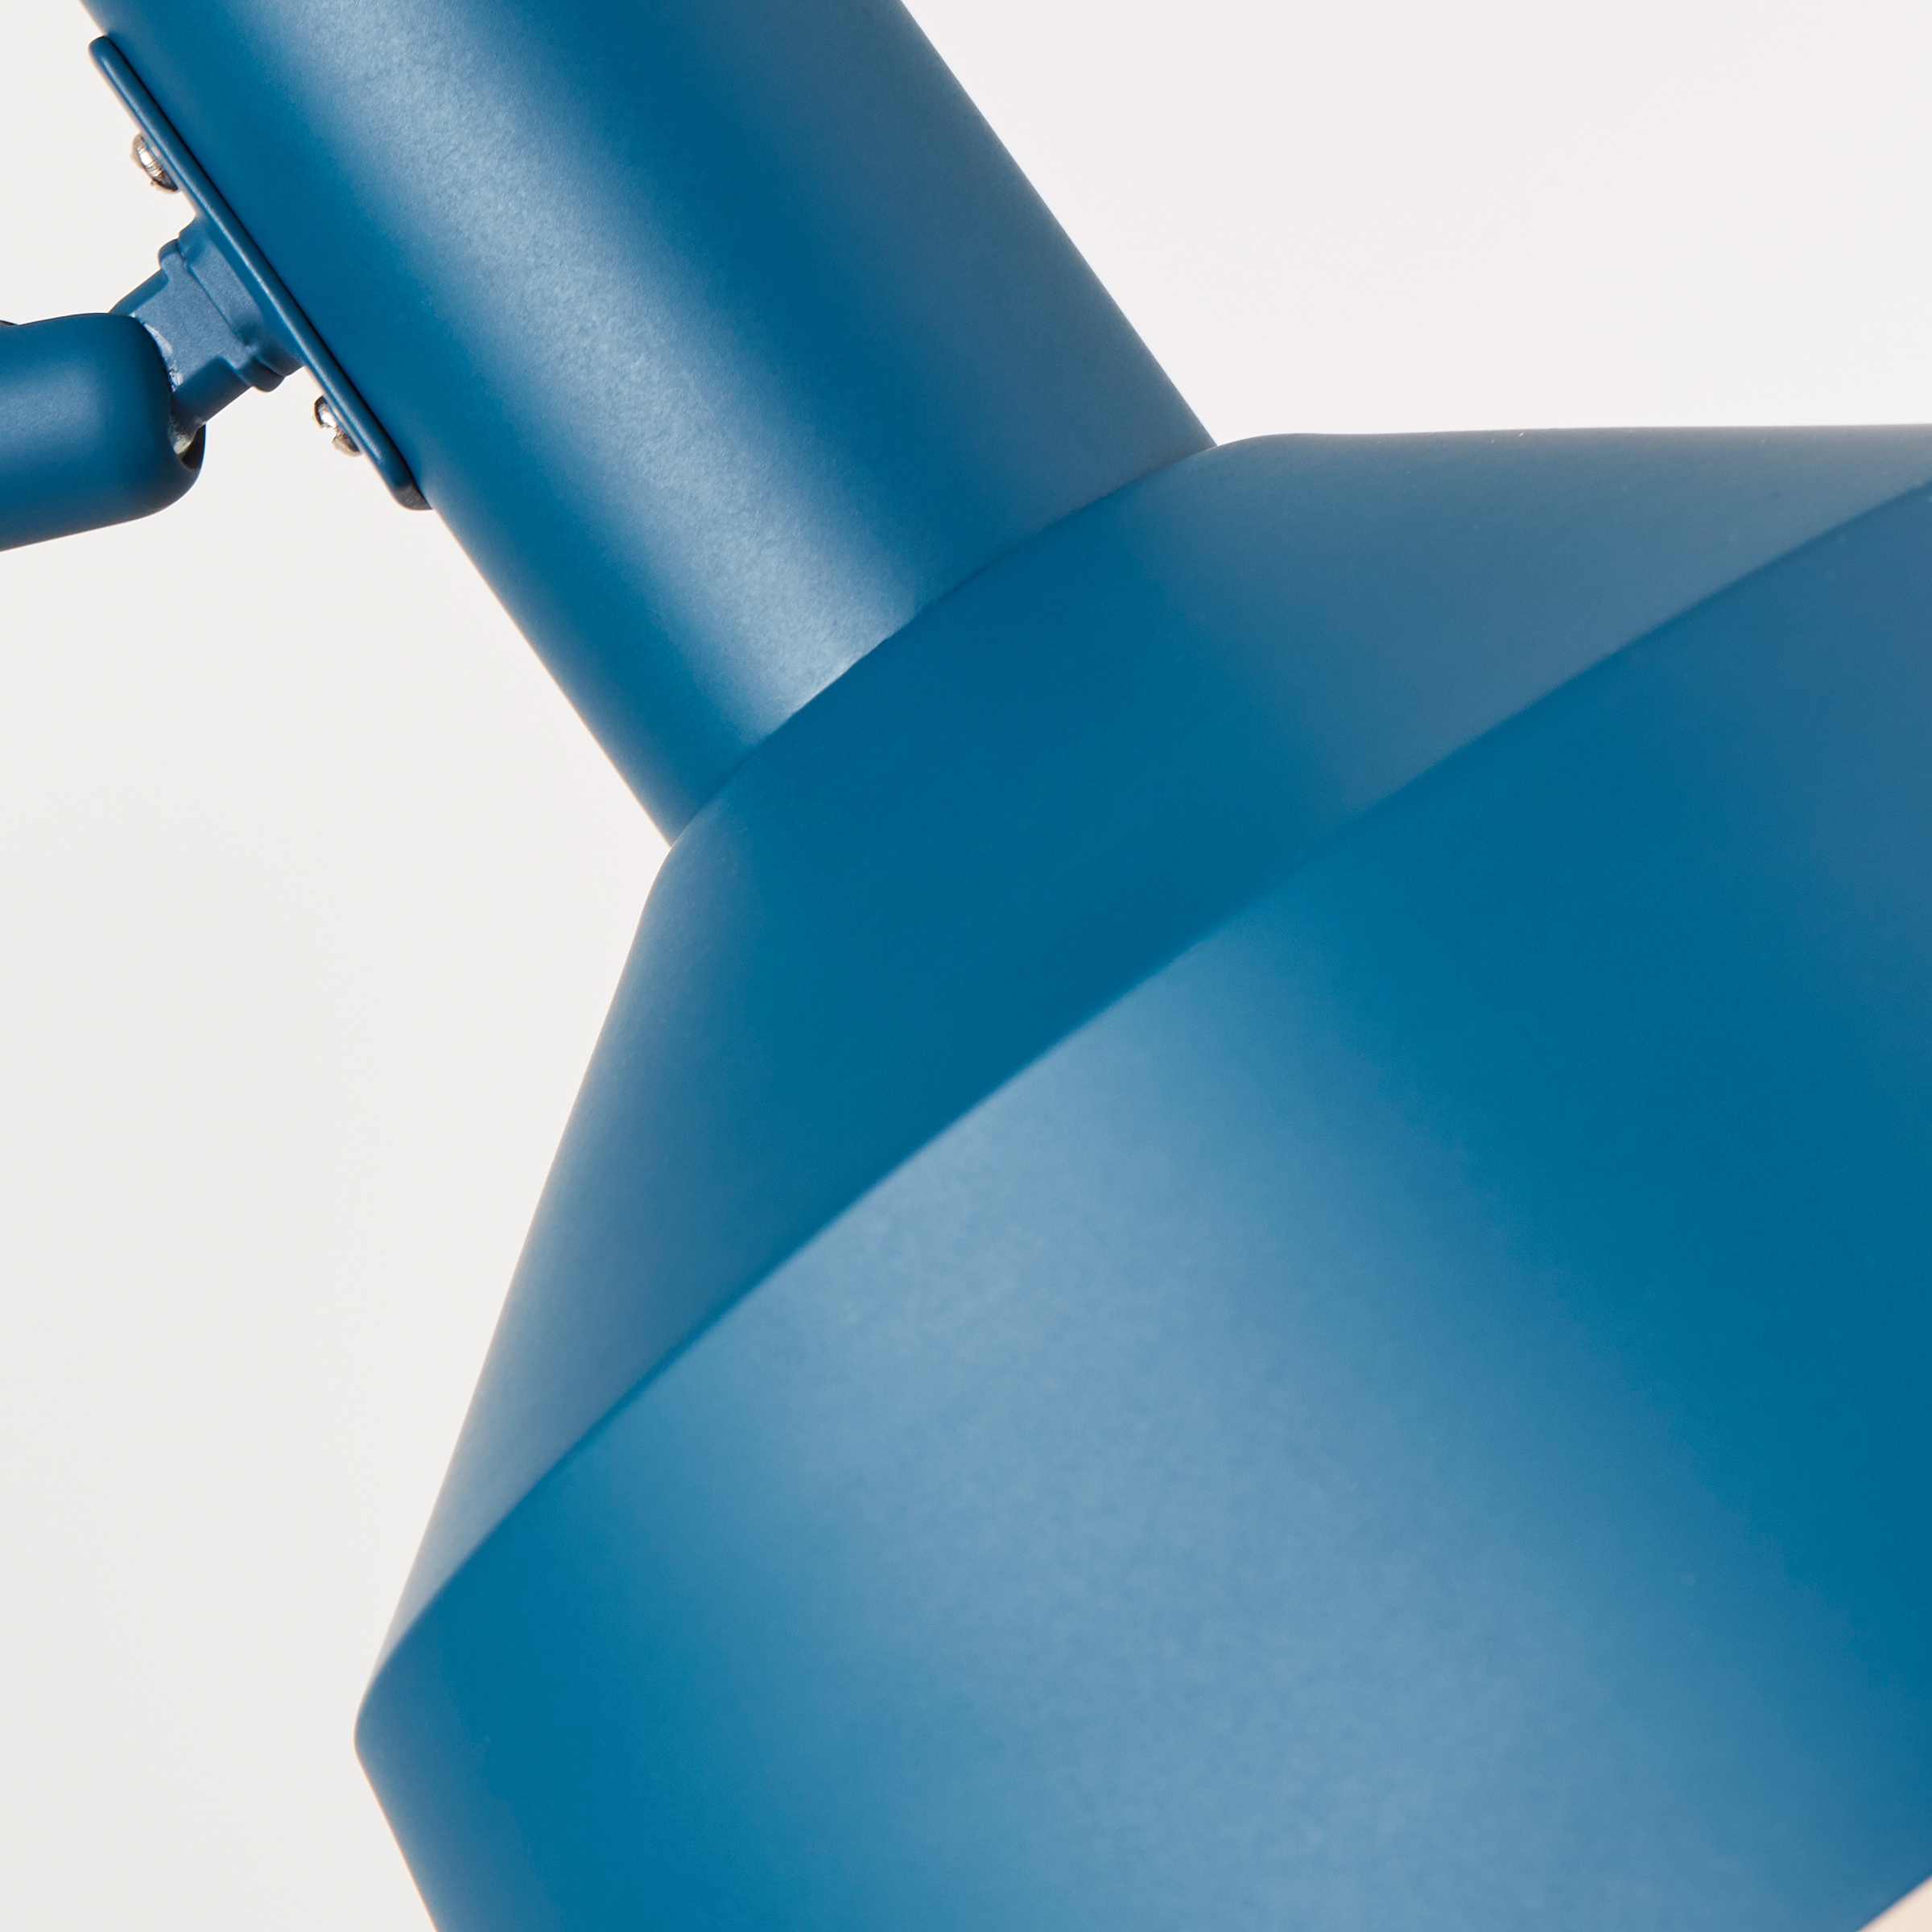 COUCH♥ Stehlampe »Strahlemann«, 1 x E27, max. 40 W, Schirm verstellbar  Stehleuchte Metall bestellen bei OTTO